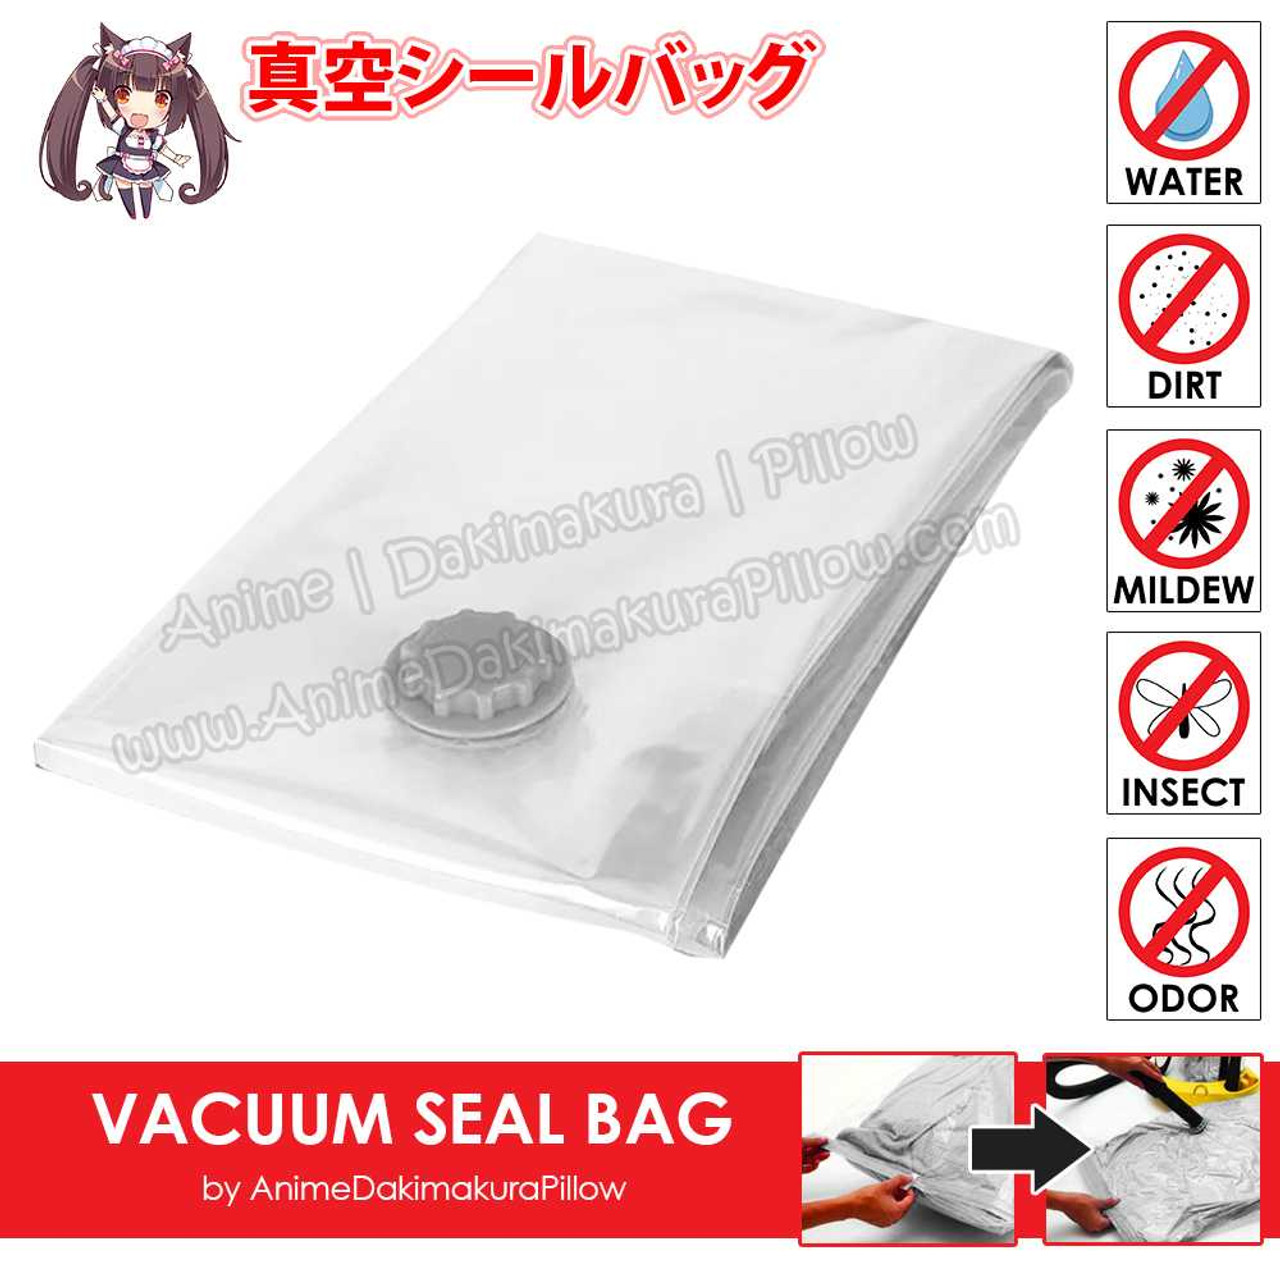 ADP Dakimakura Compress Vacuum Seal Bag for Easy Storage ADP-019